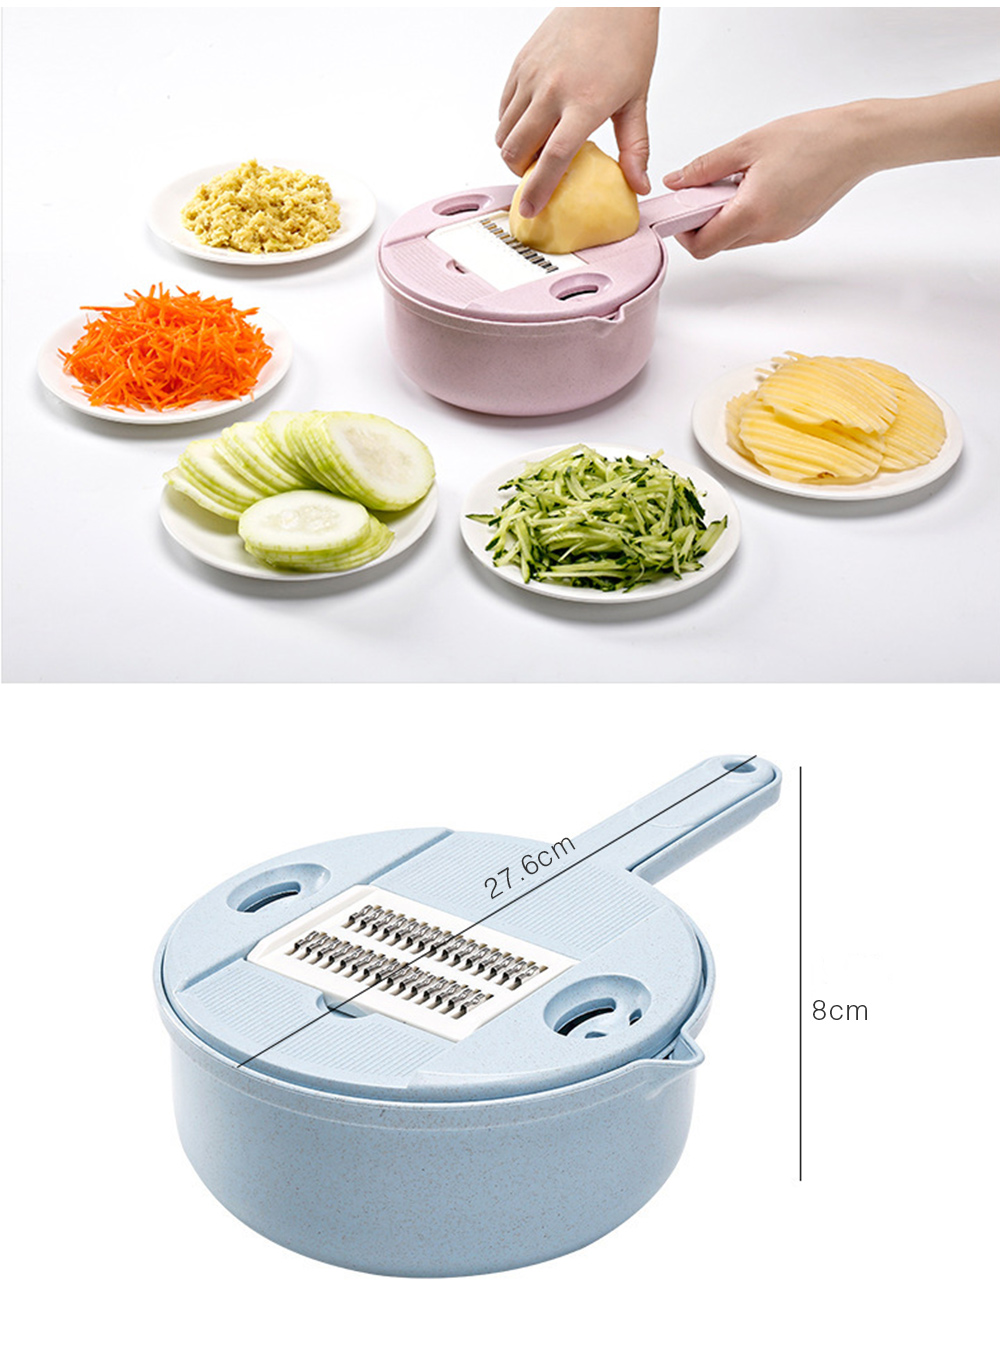 Multifunction Vegetables Cutter Food Chopper Slicer Dicer Tool